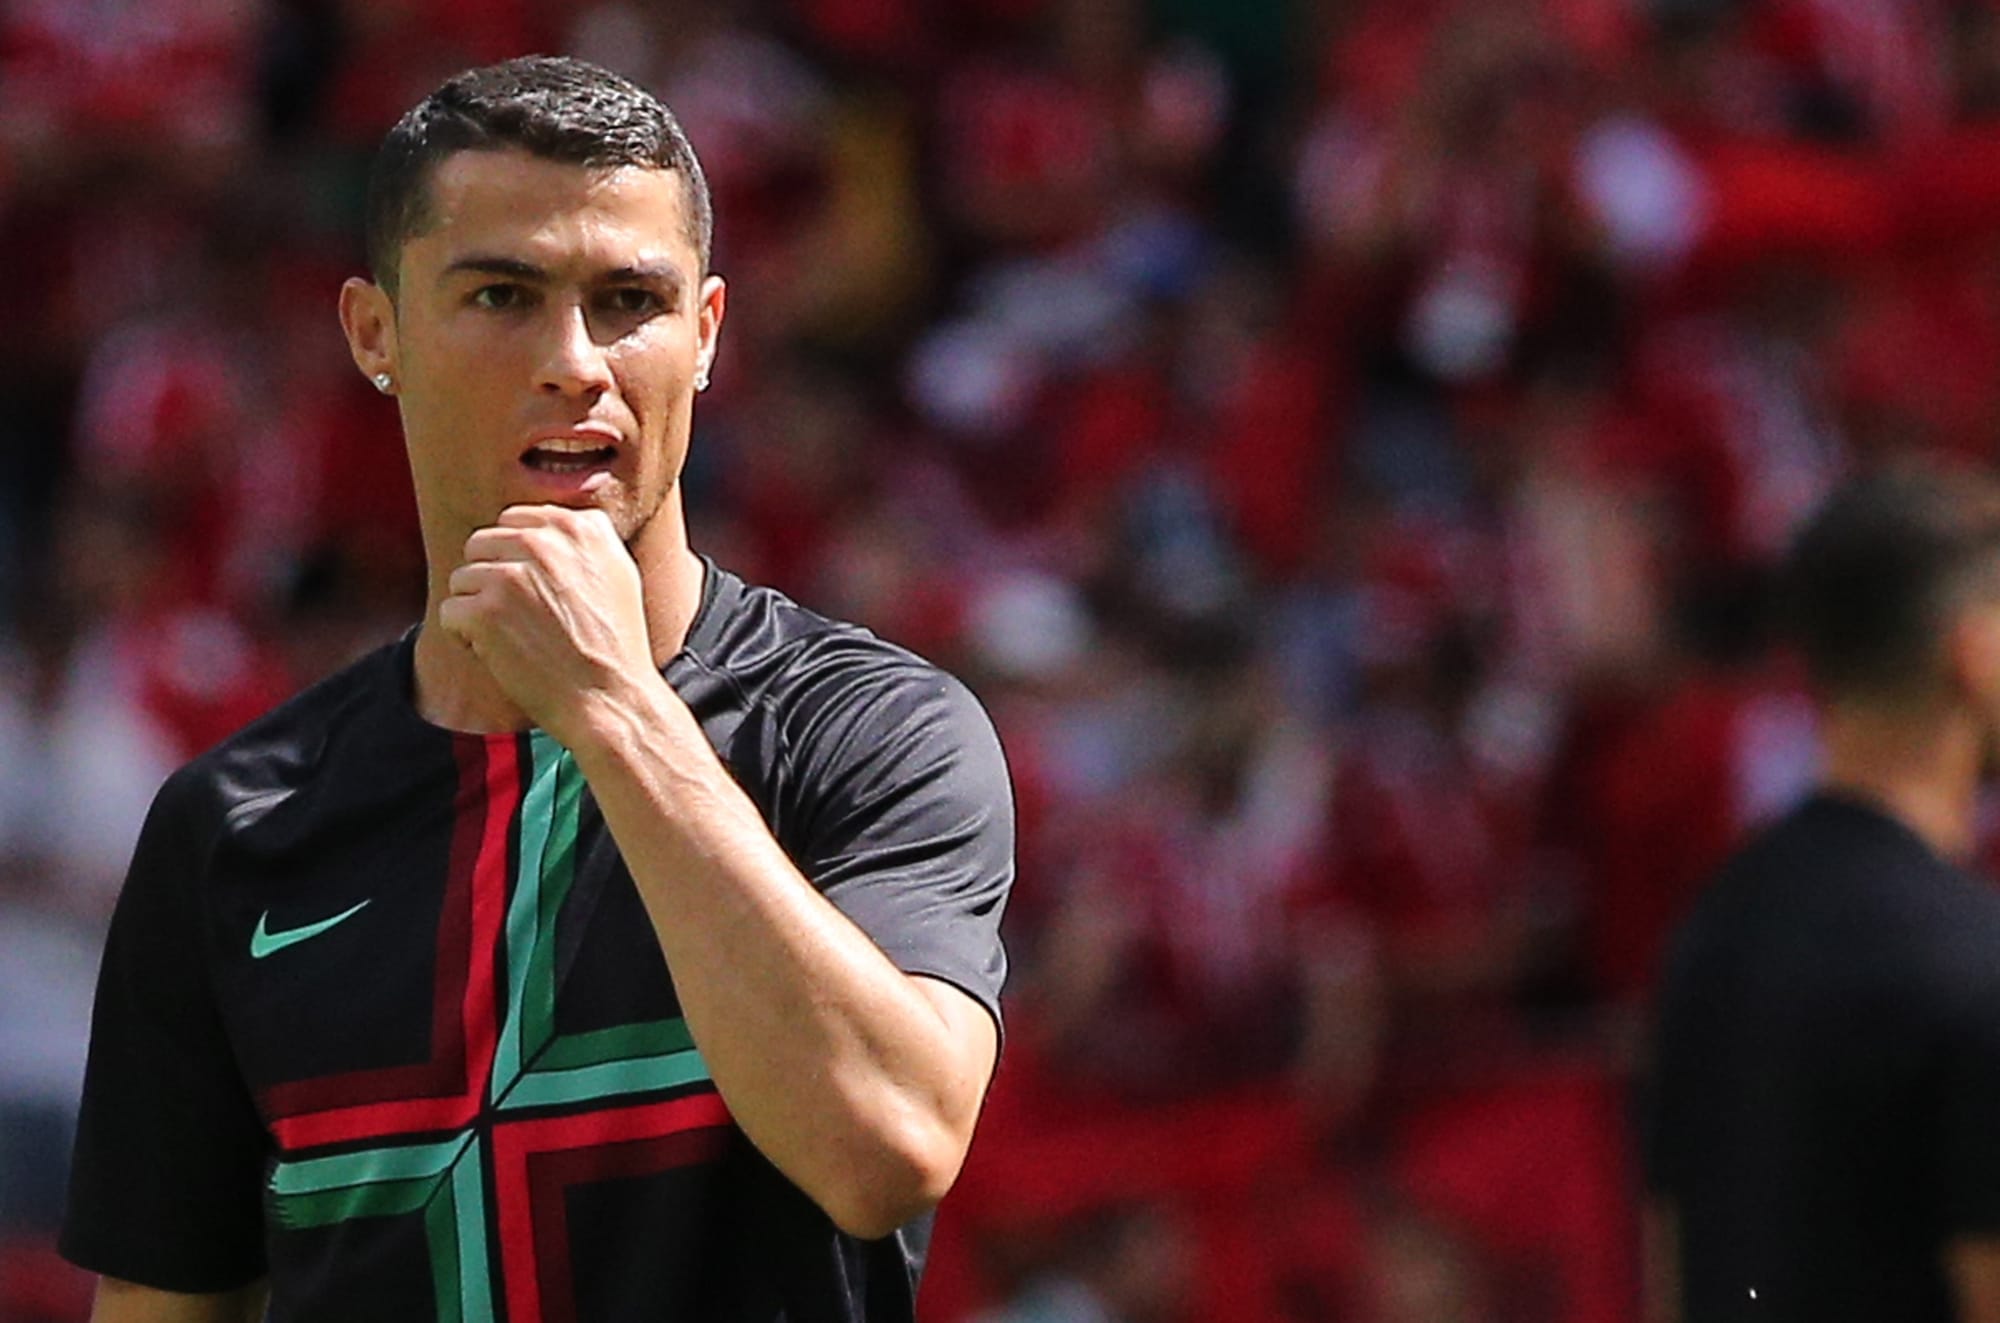 UFL rivela il gameplay e annuncia la partnership con Cristiano Ronaldo thumbnail